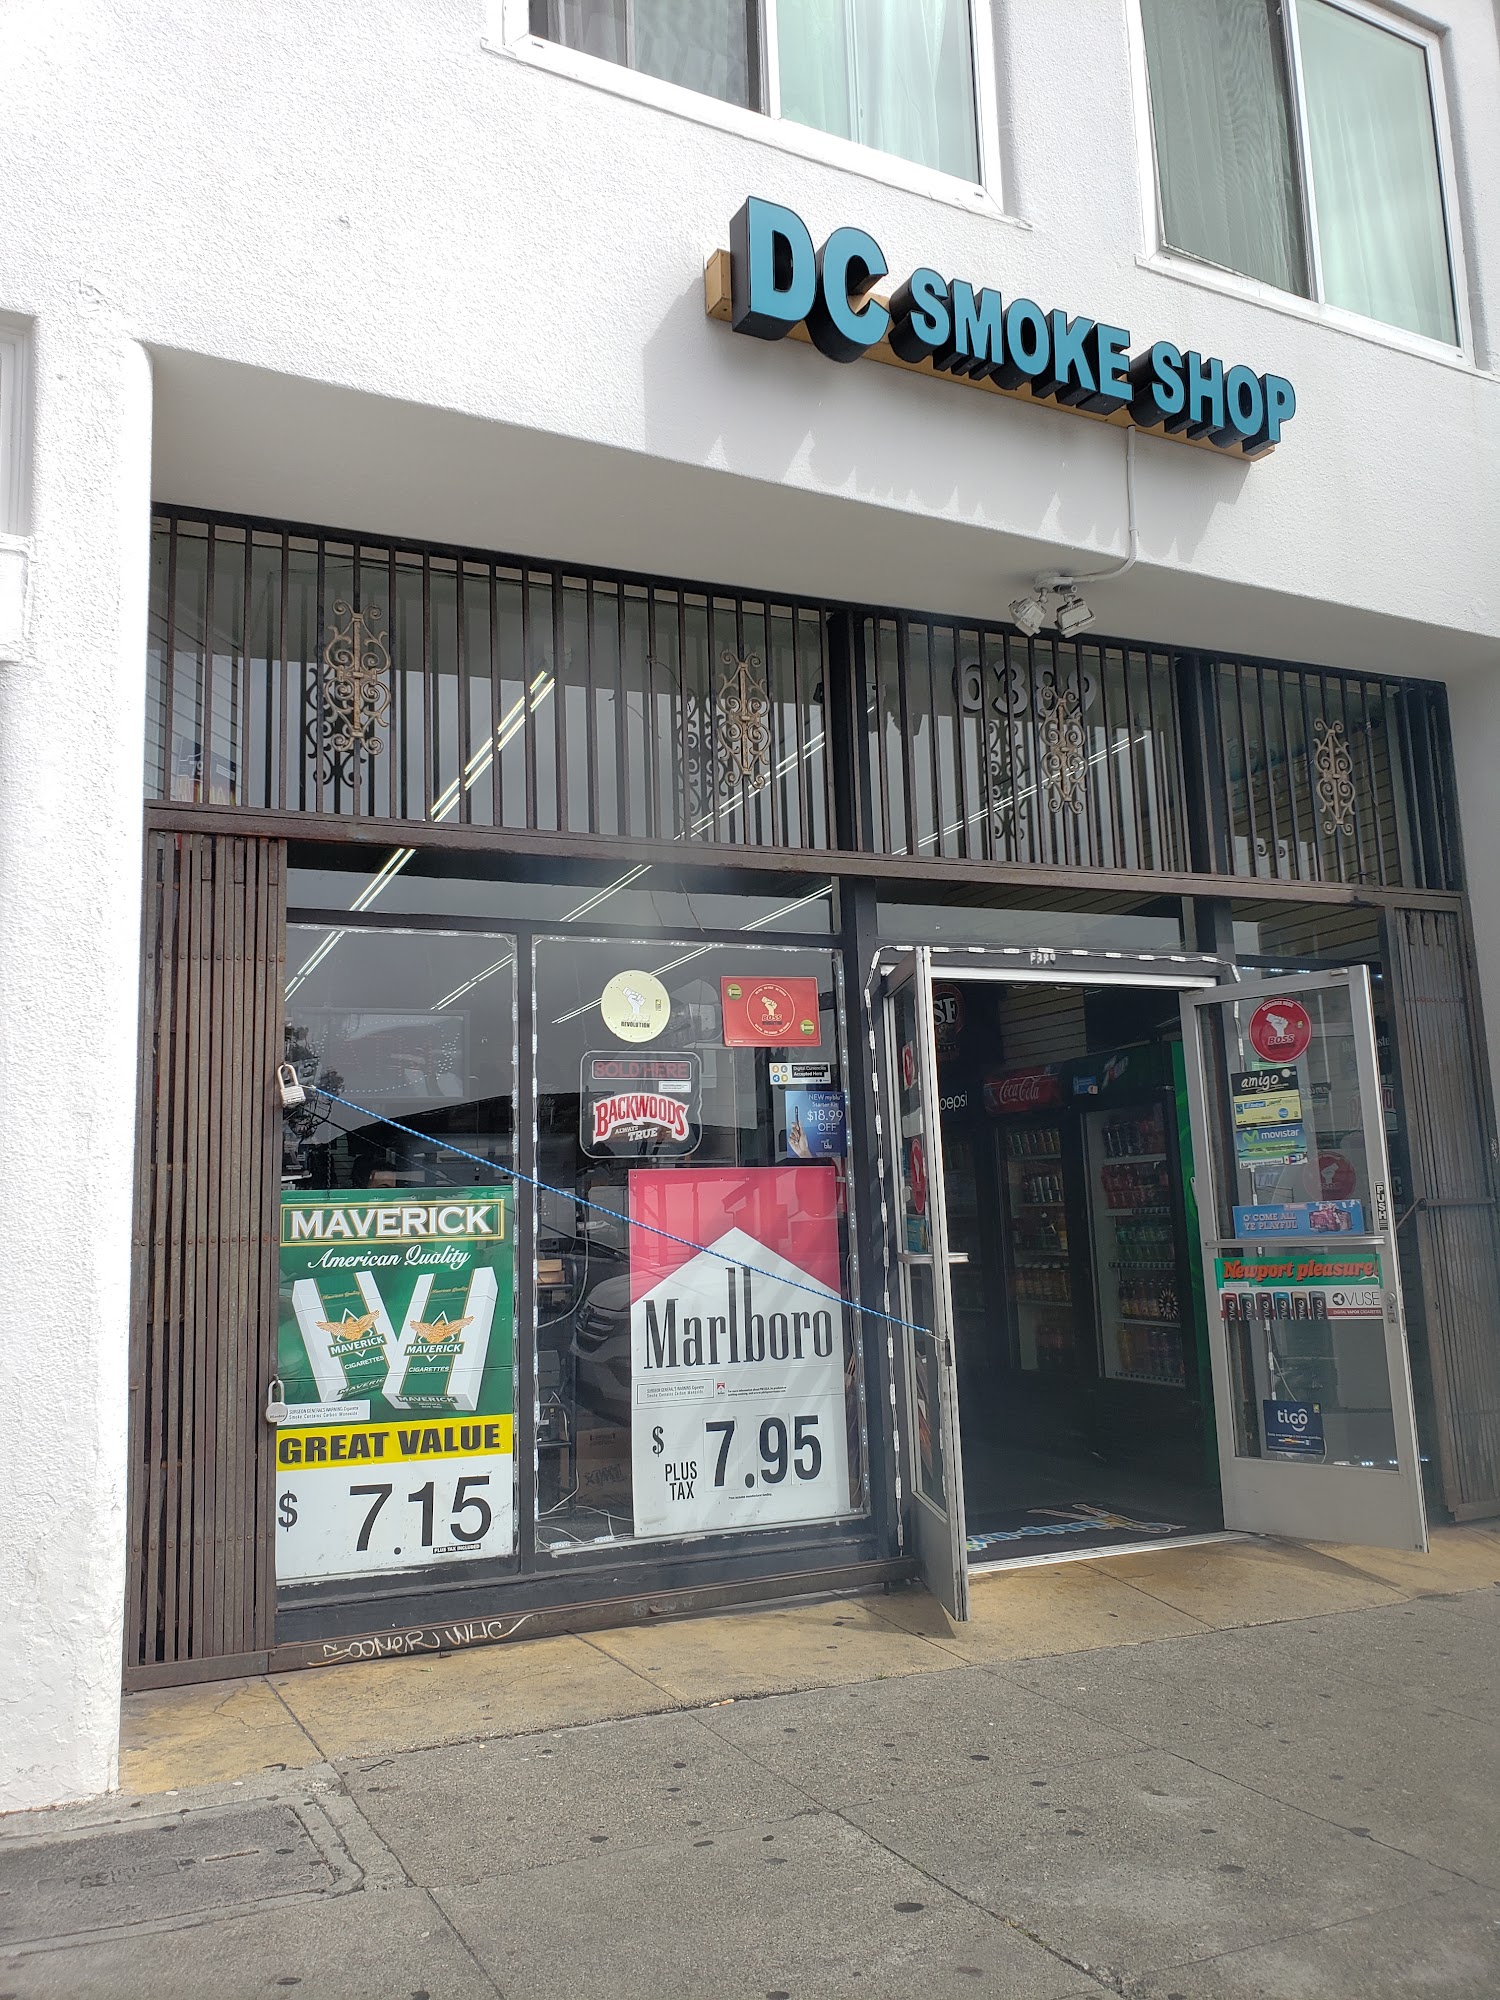 DC Smoke Shop